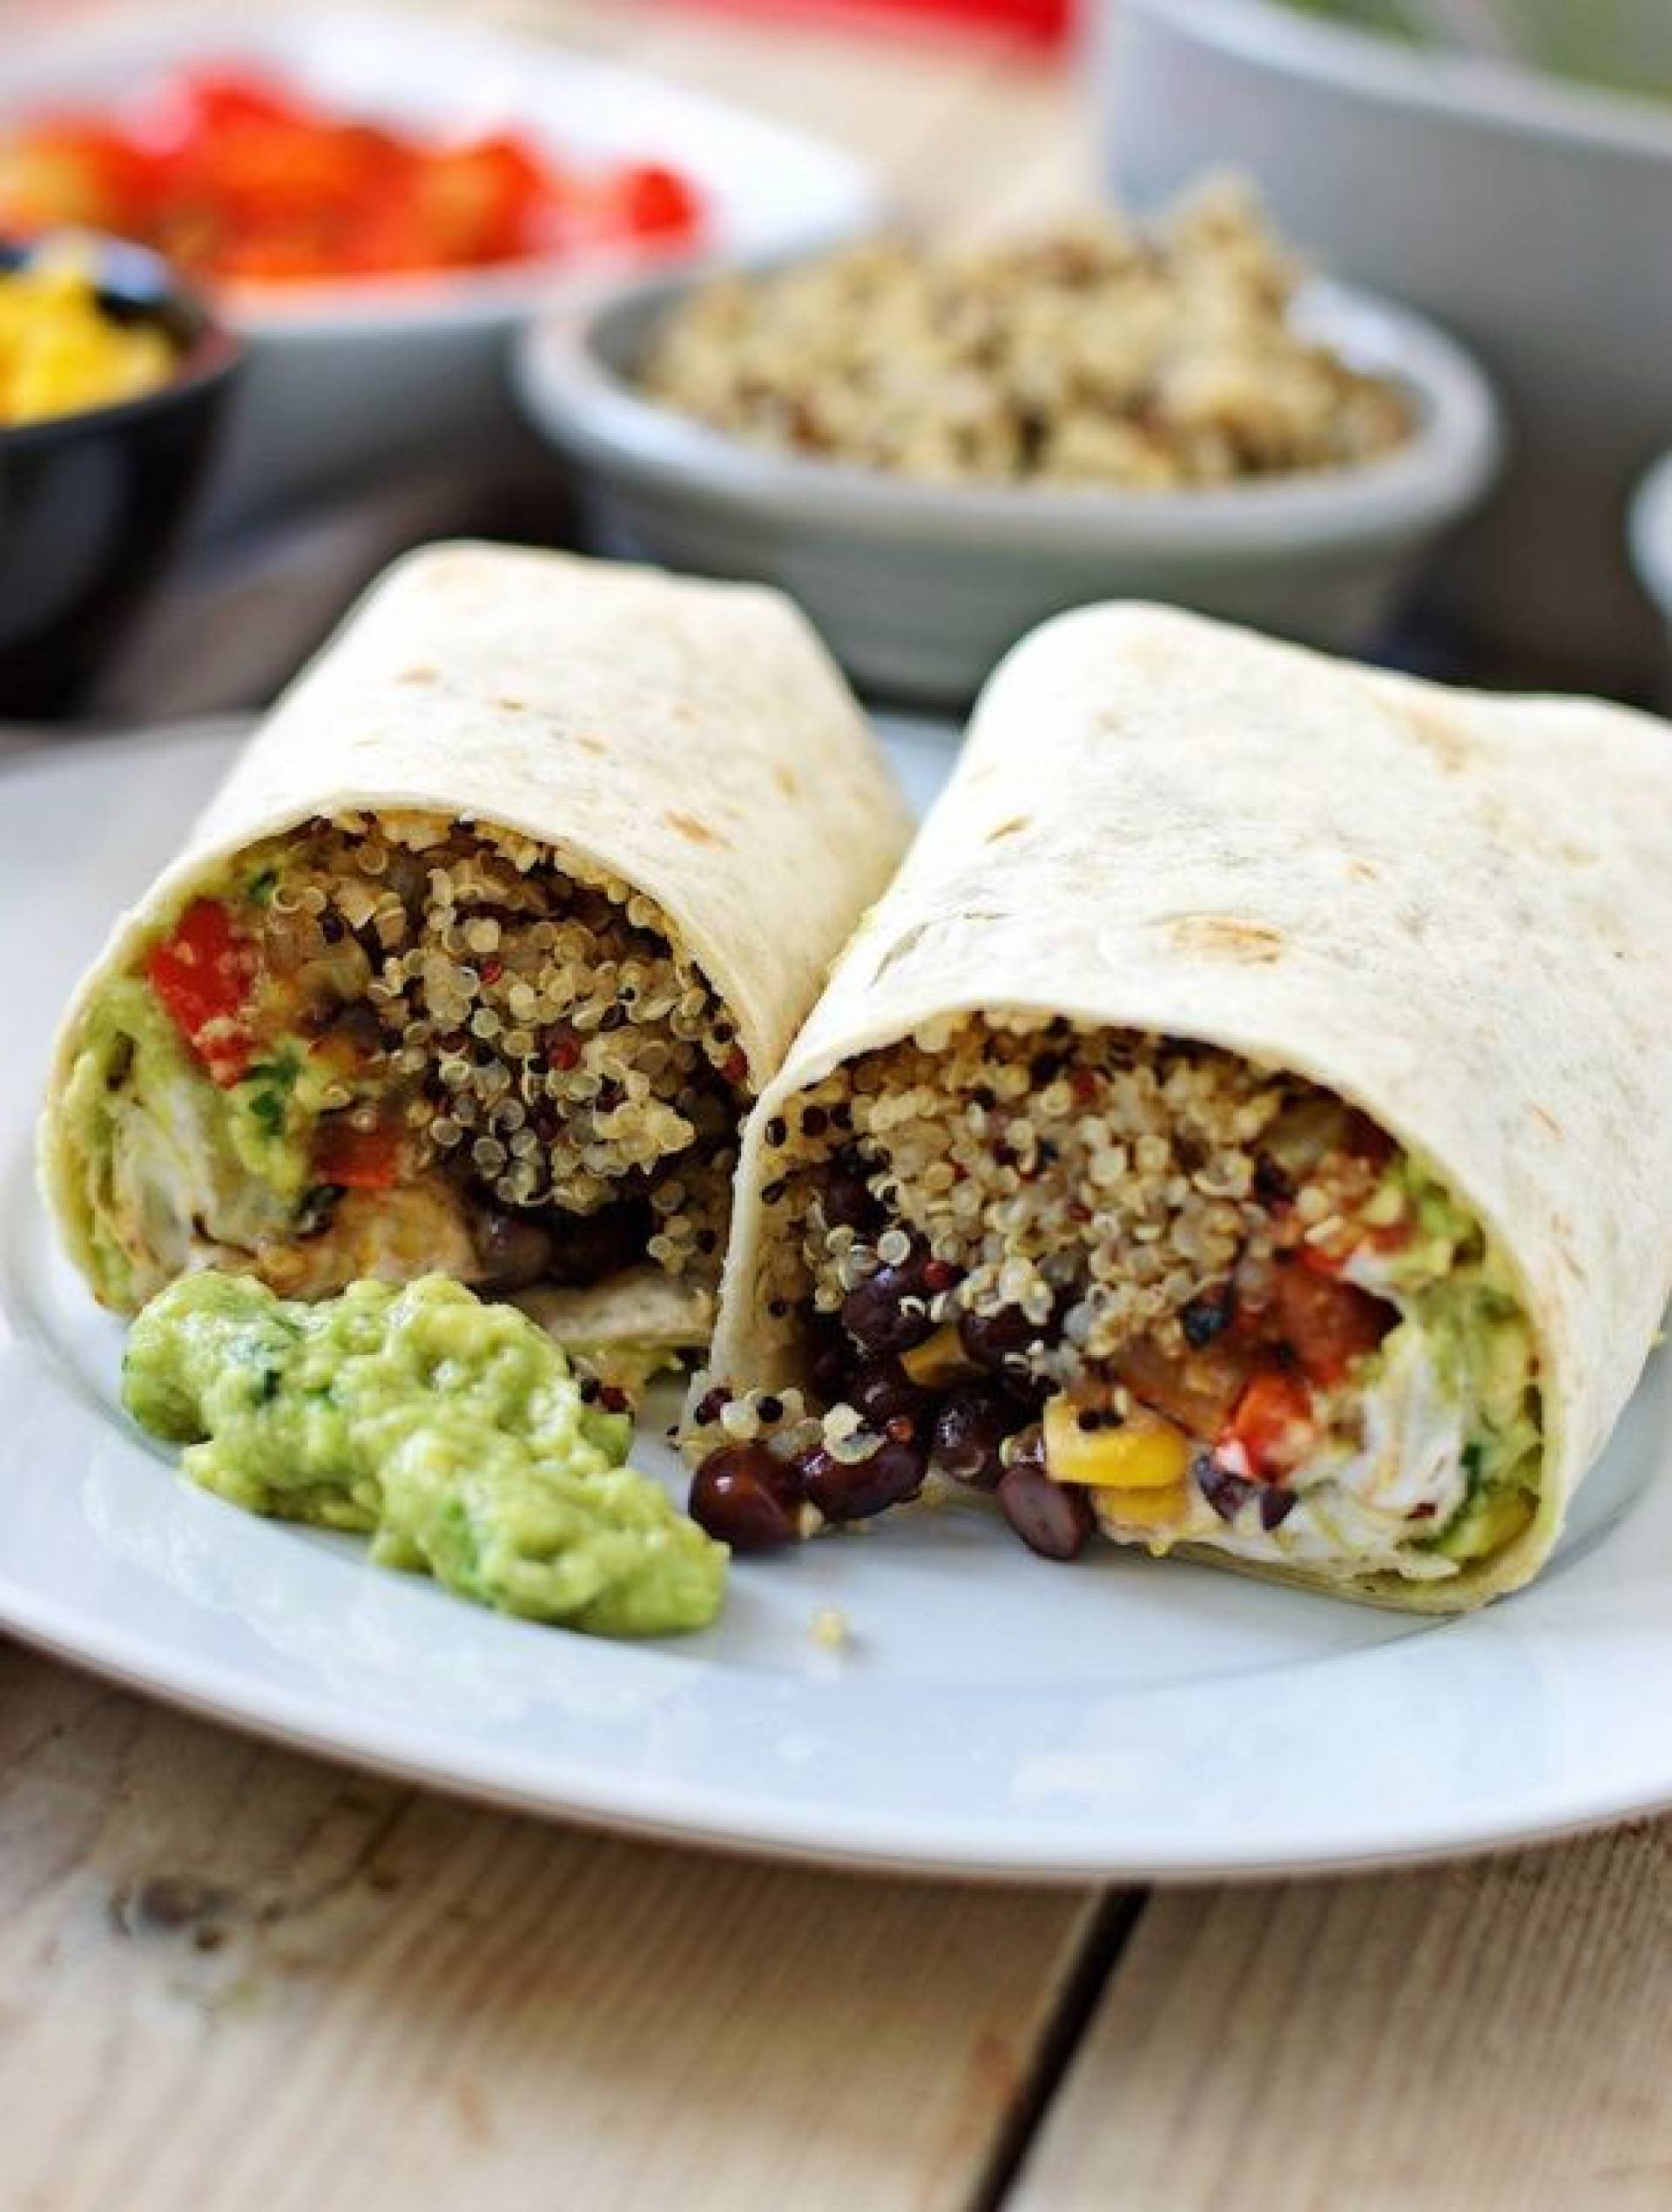 Mexi quinoa wrap (vegan)(gluten free)